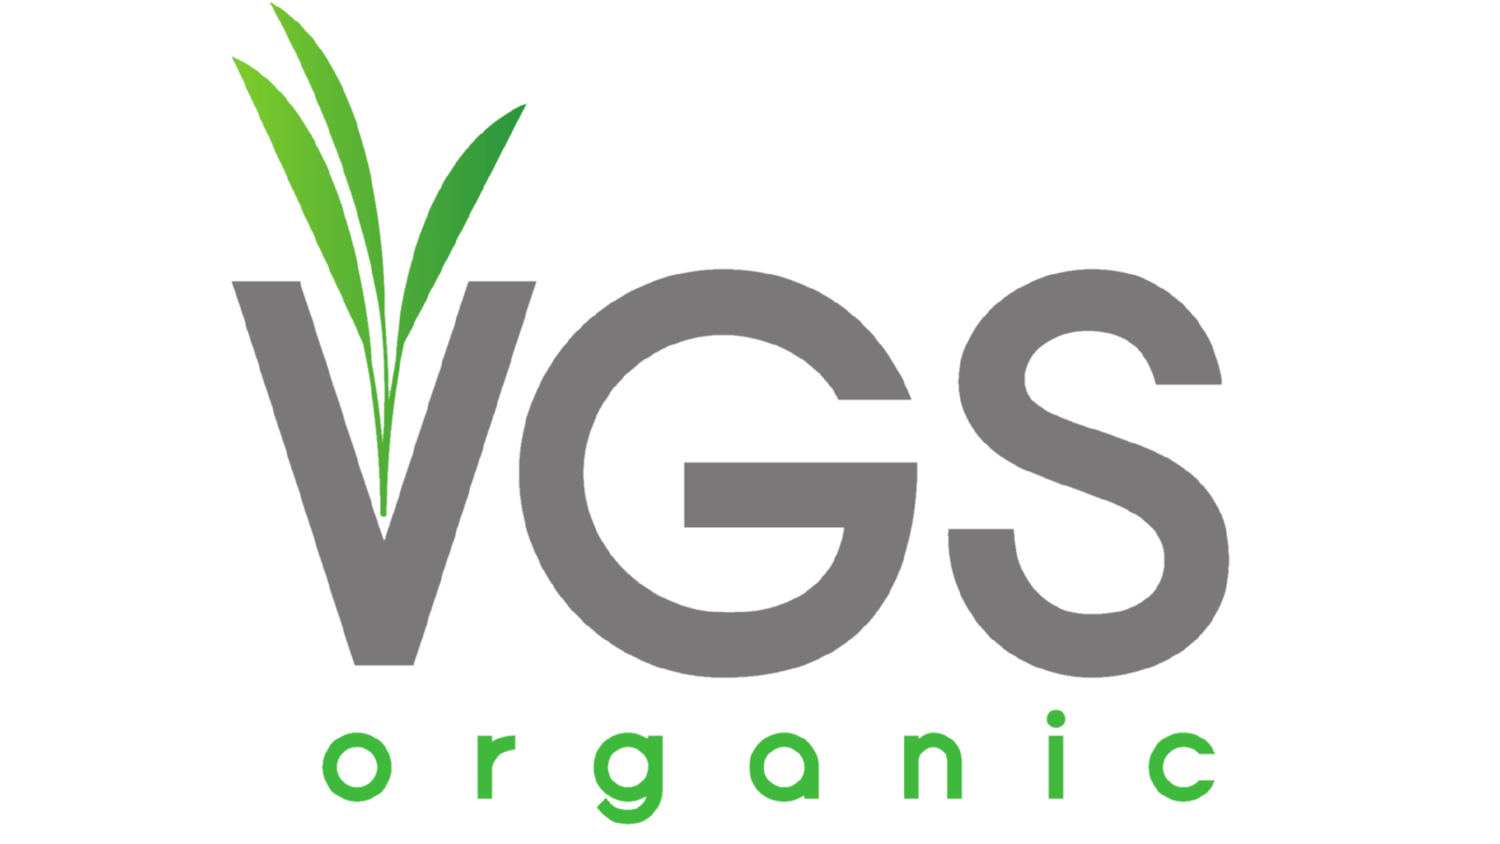 VGS Logo - VGS Organic